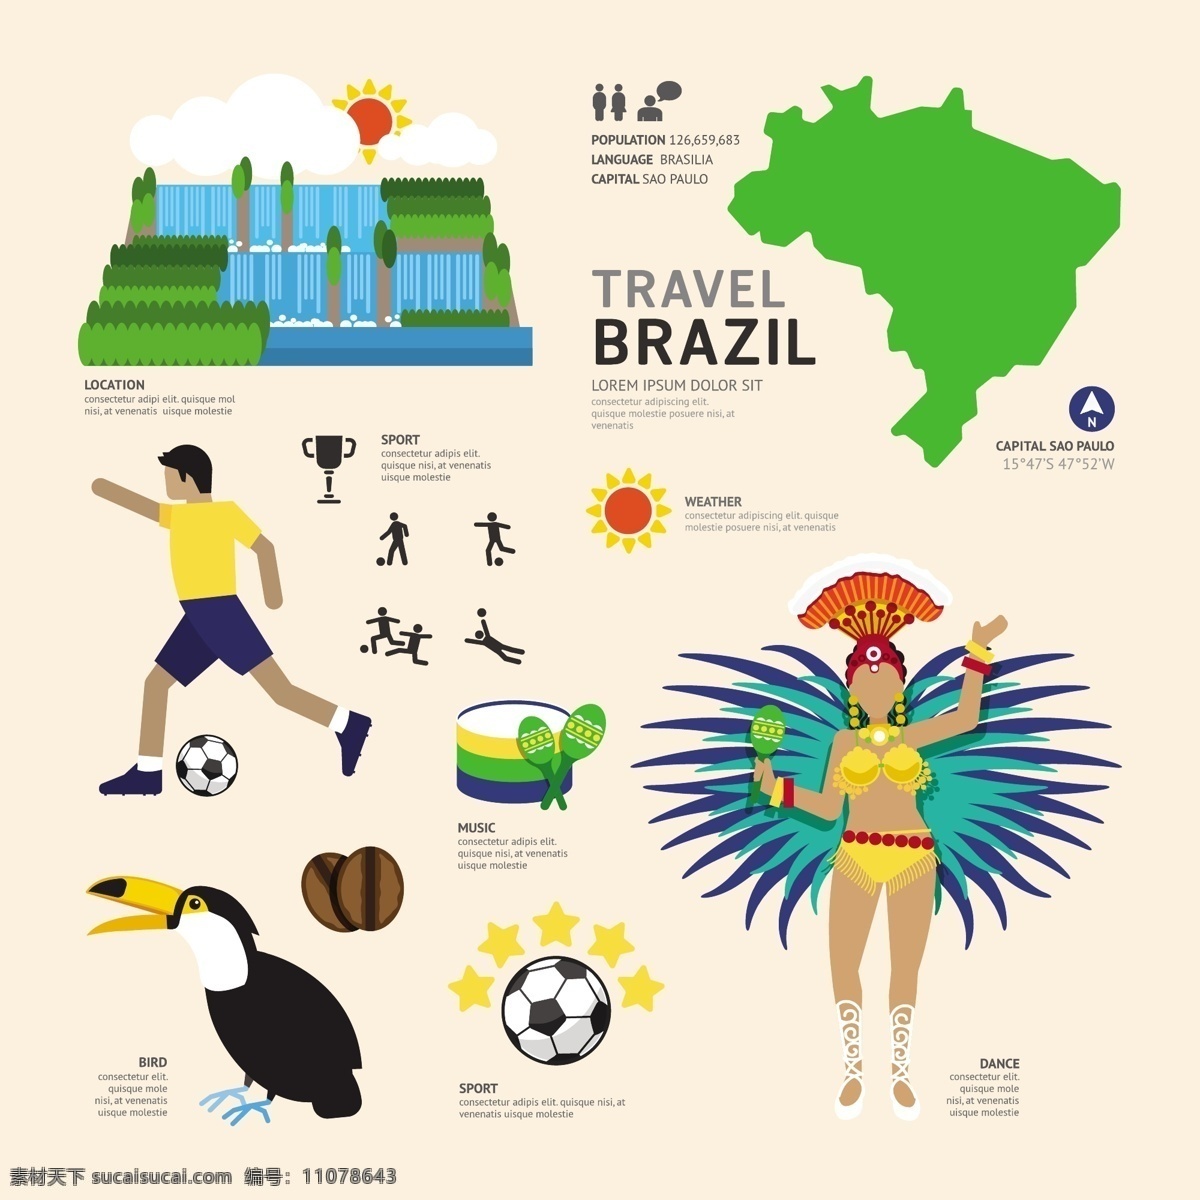 桑巴舞 巴西 旅游 巴西旅游 旅行 旅游景点 著名景点 旅游图标 巨嘴鸟 矢量趣多多 生活百科 休闲娱乐